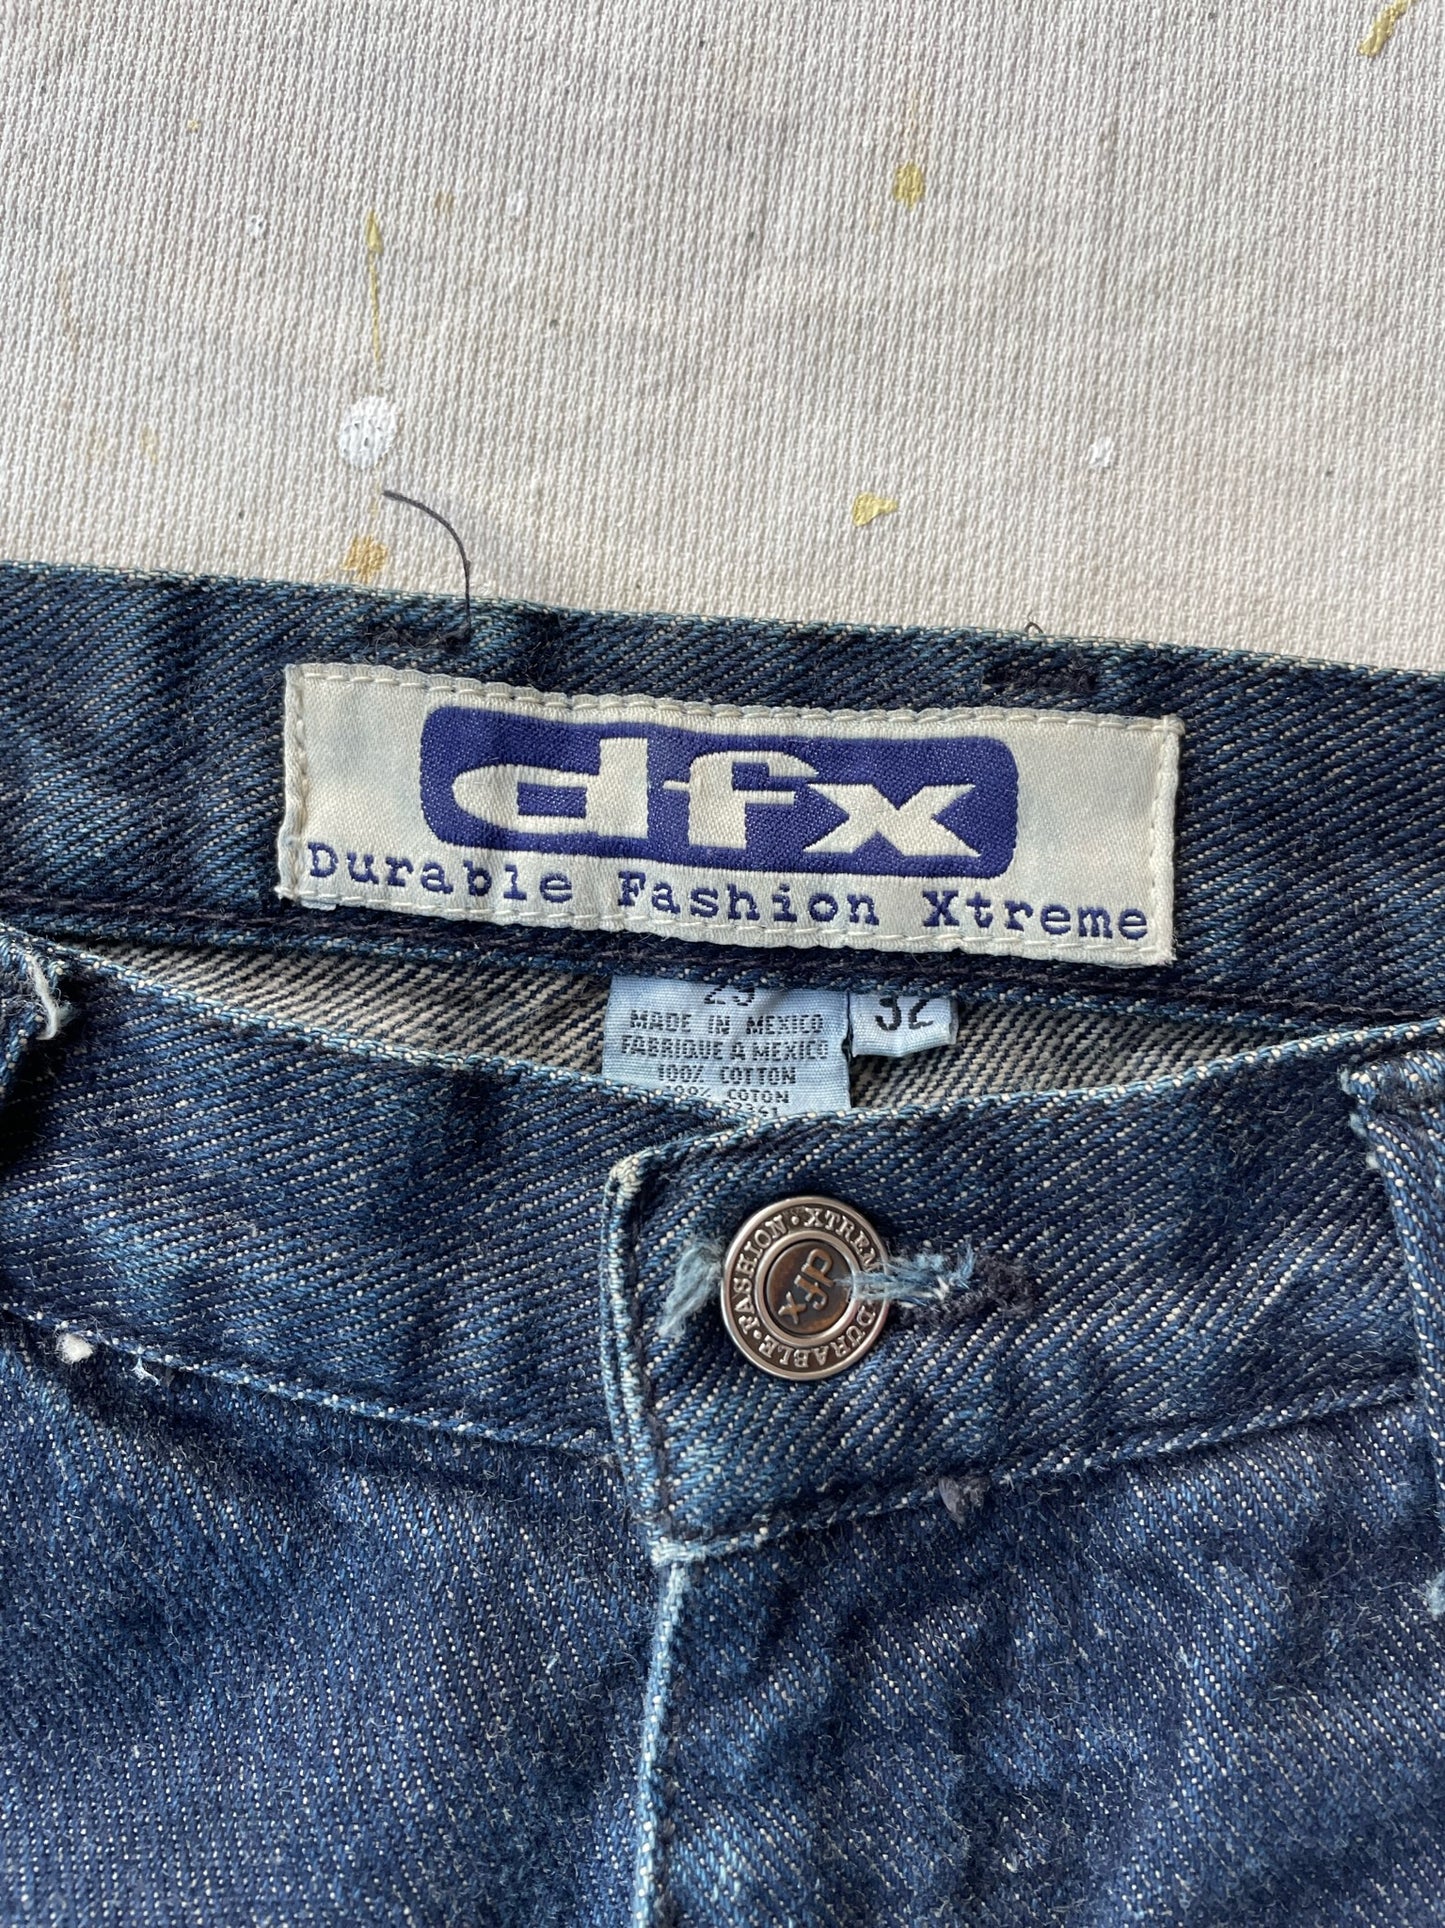 DFX Carpenter Jeans—[29x31]